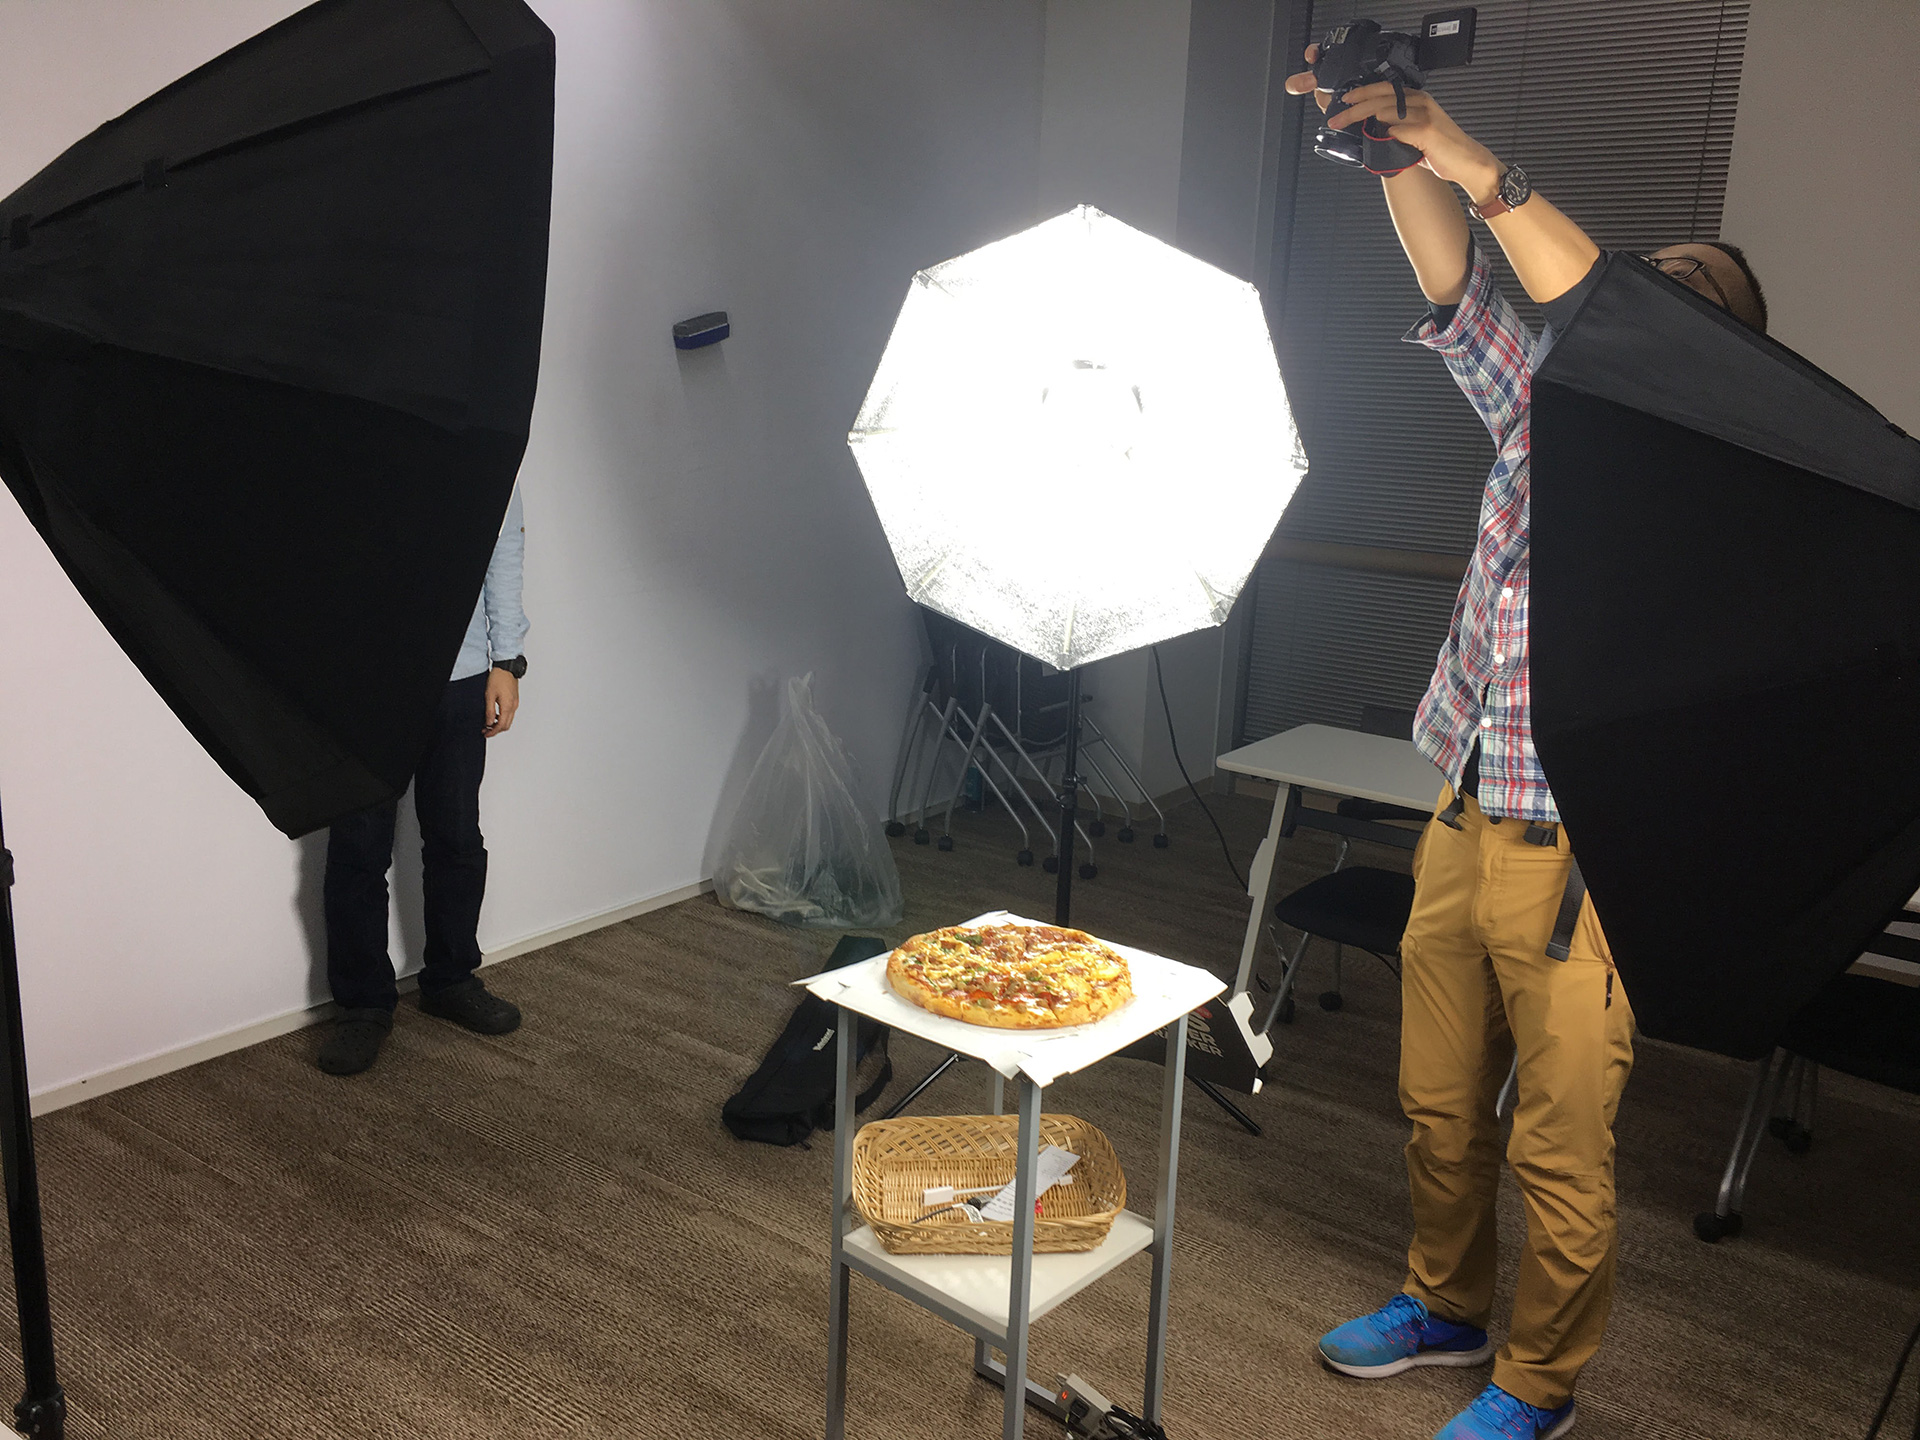 社内パーティー用のピザをフォトグラメトリー撮影